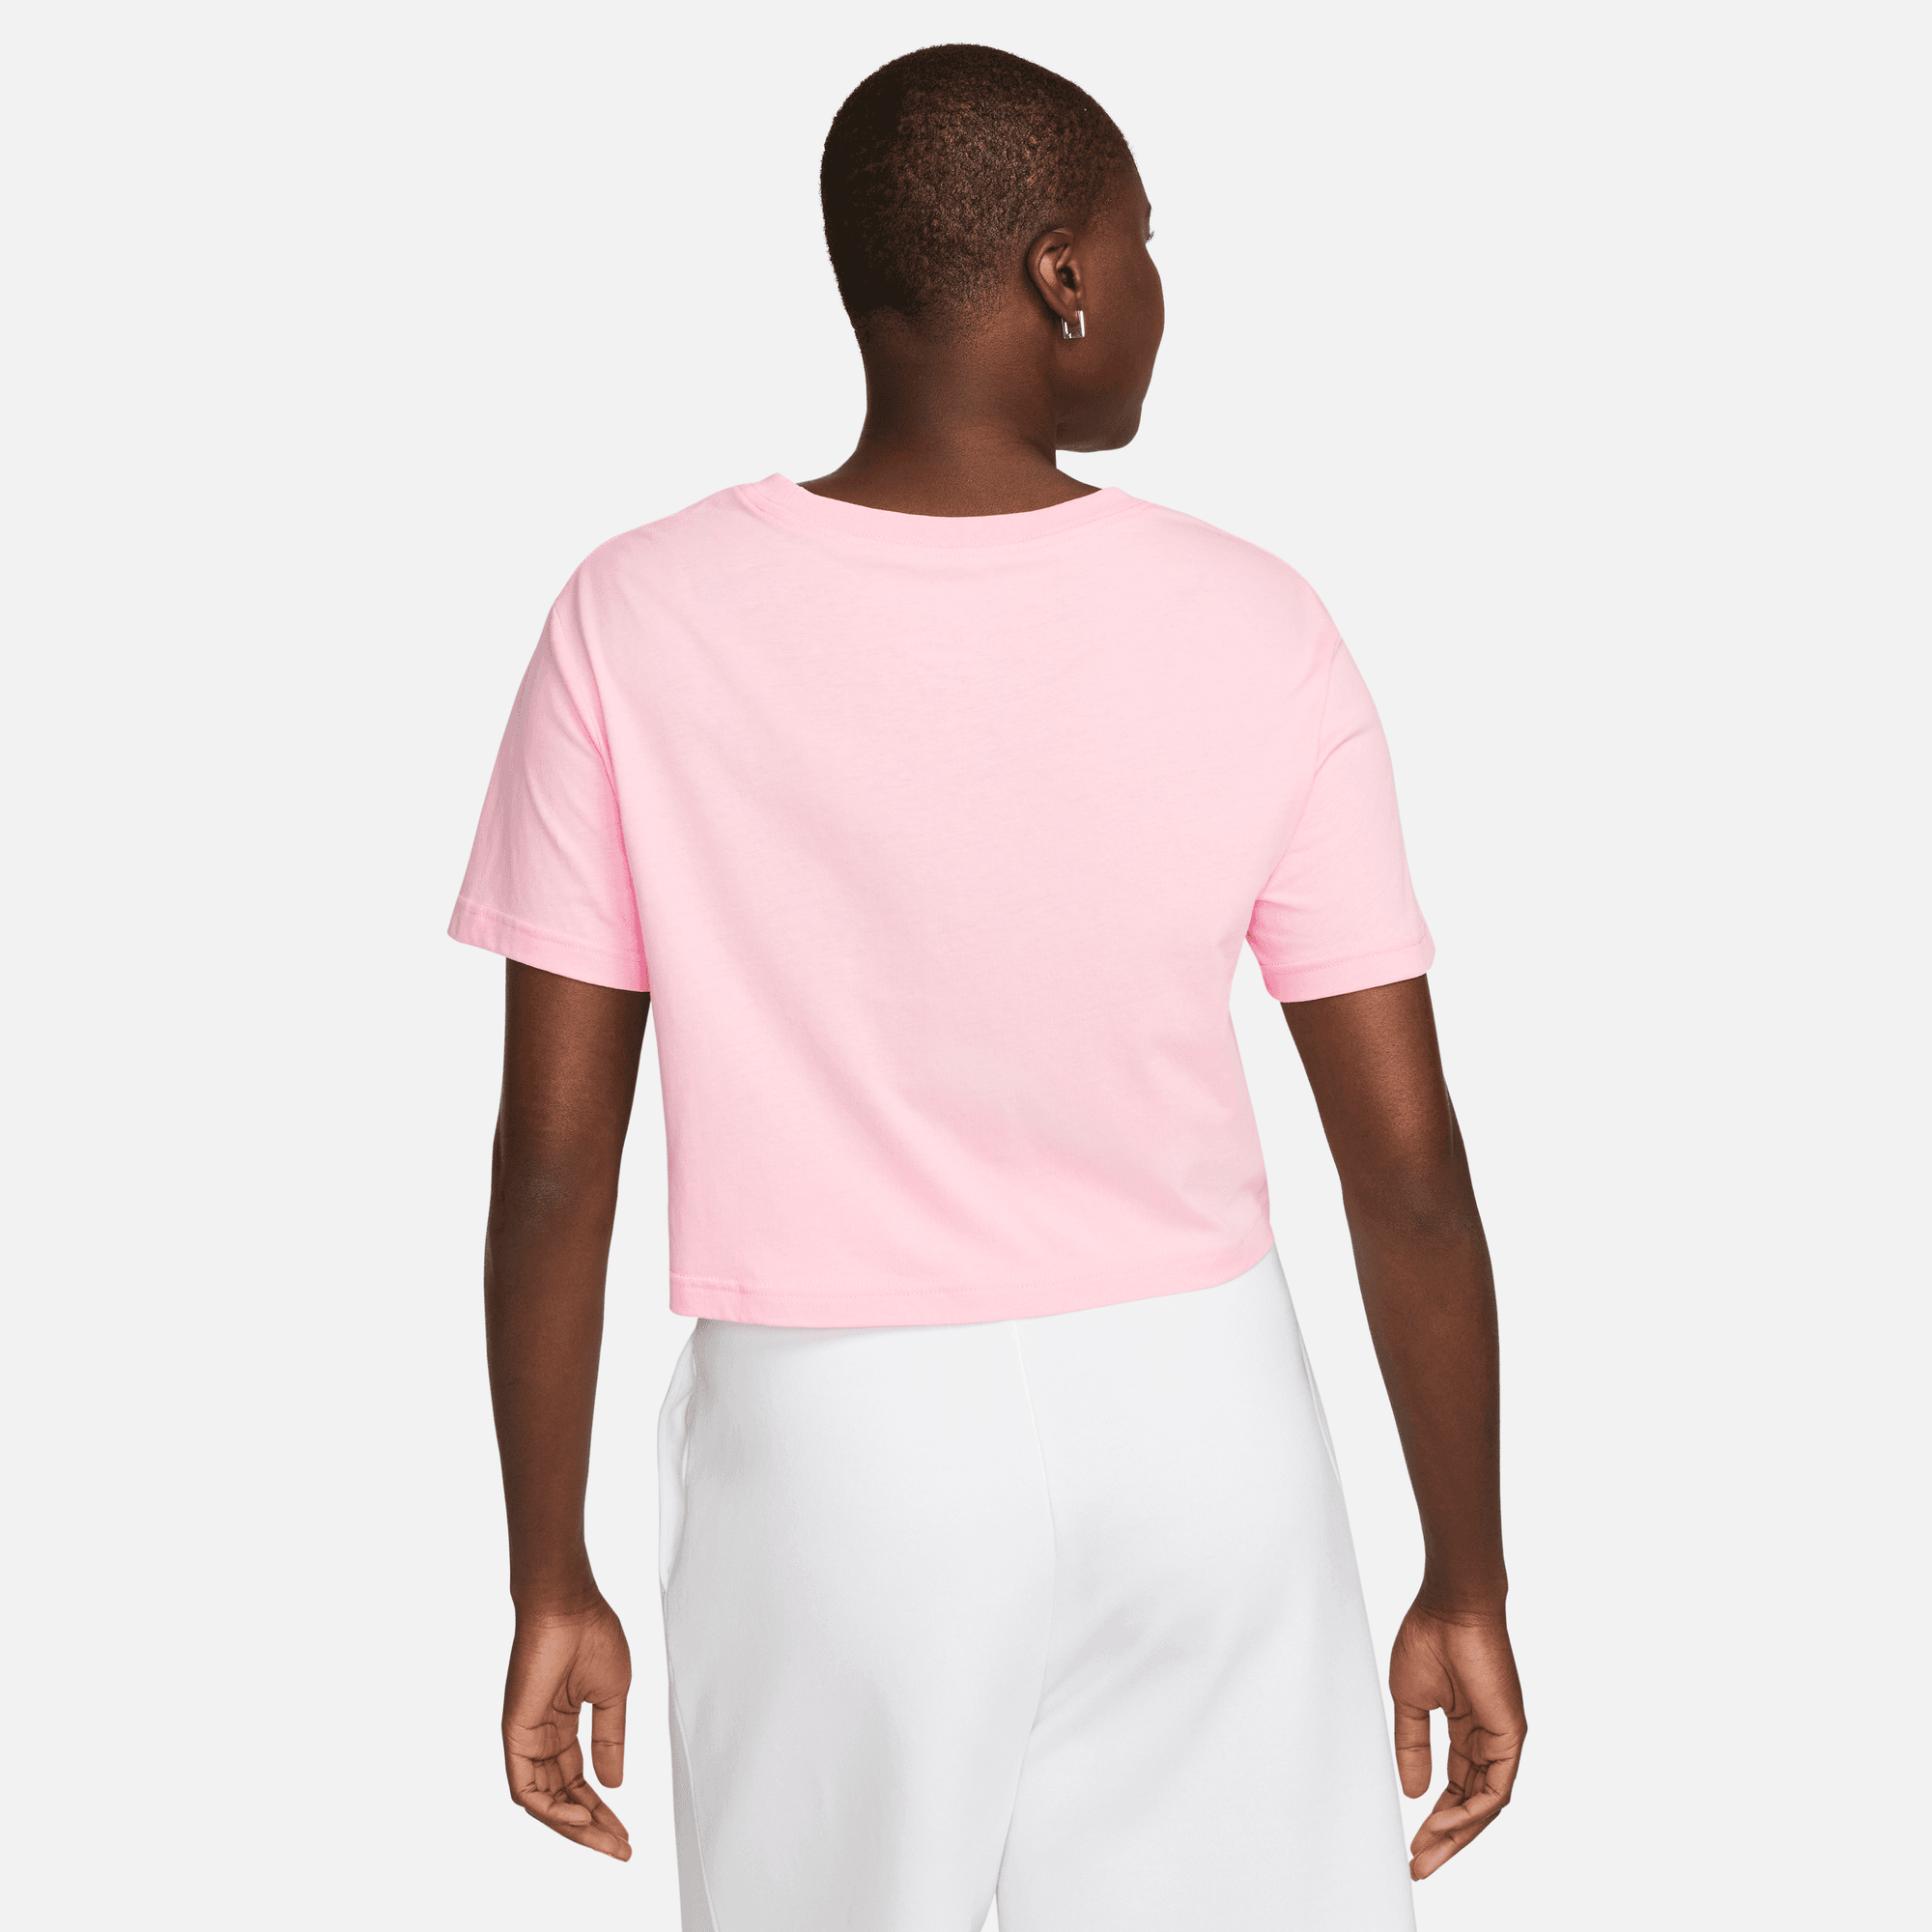 Nike Sportswear Essential Cropped Logo T-Shirt Plus Size 'Dark Grey  Heather' - FB2959-057